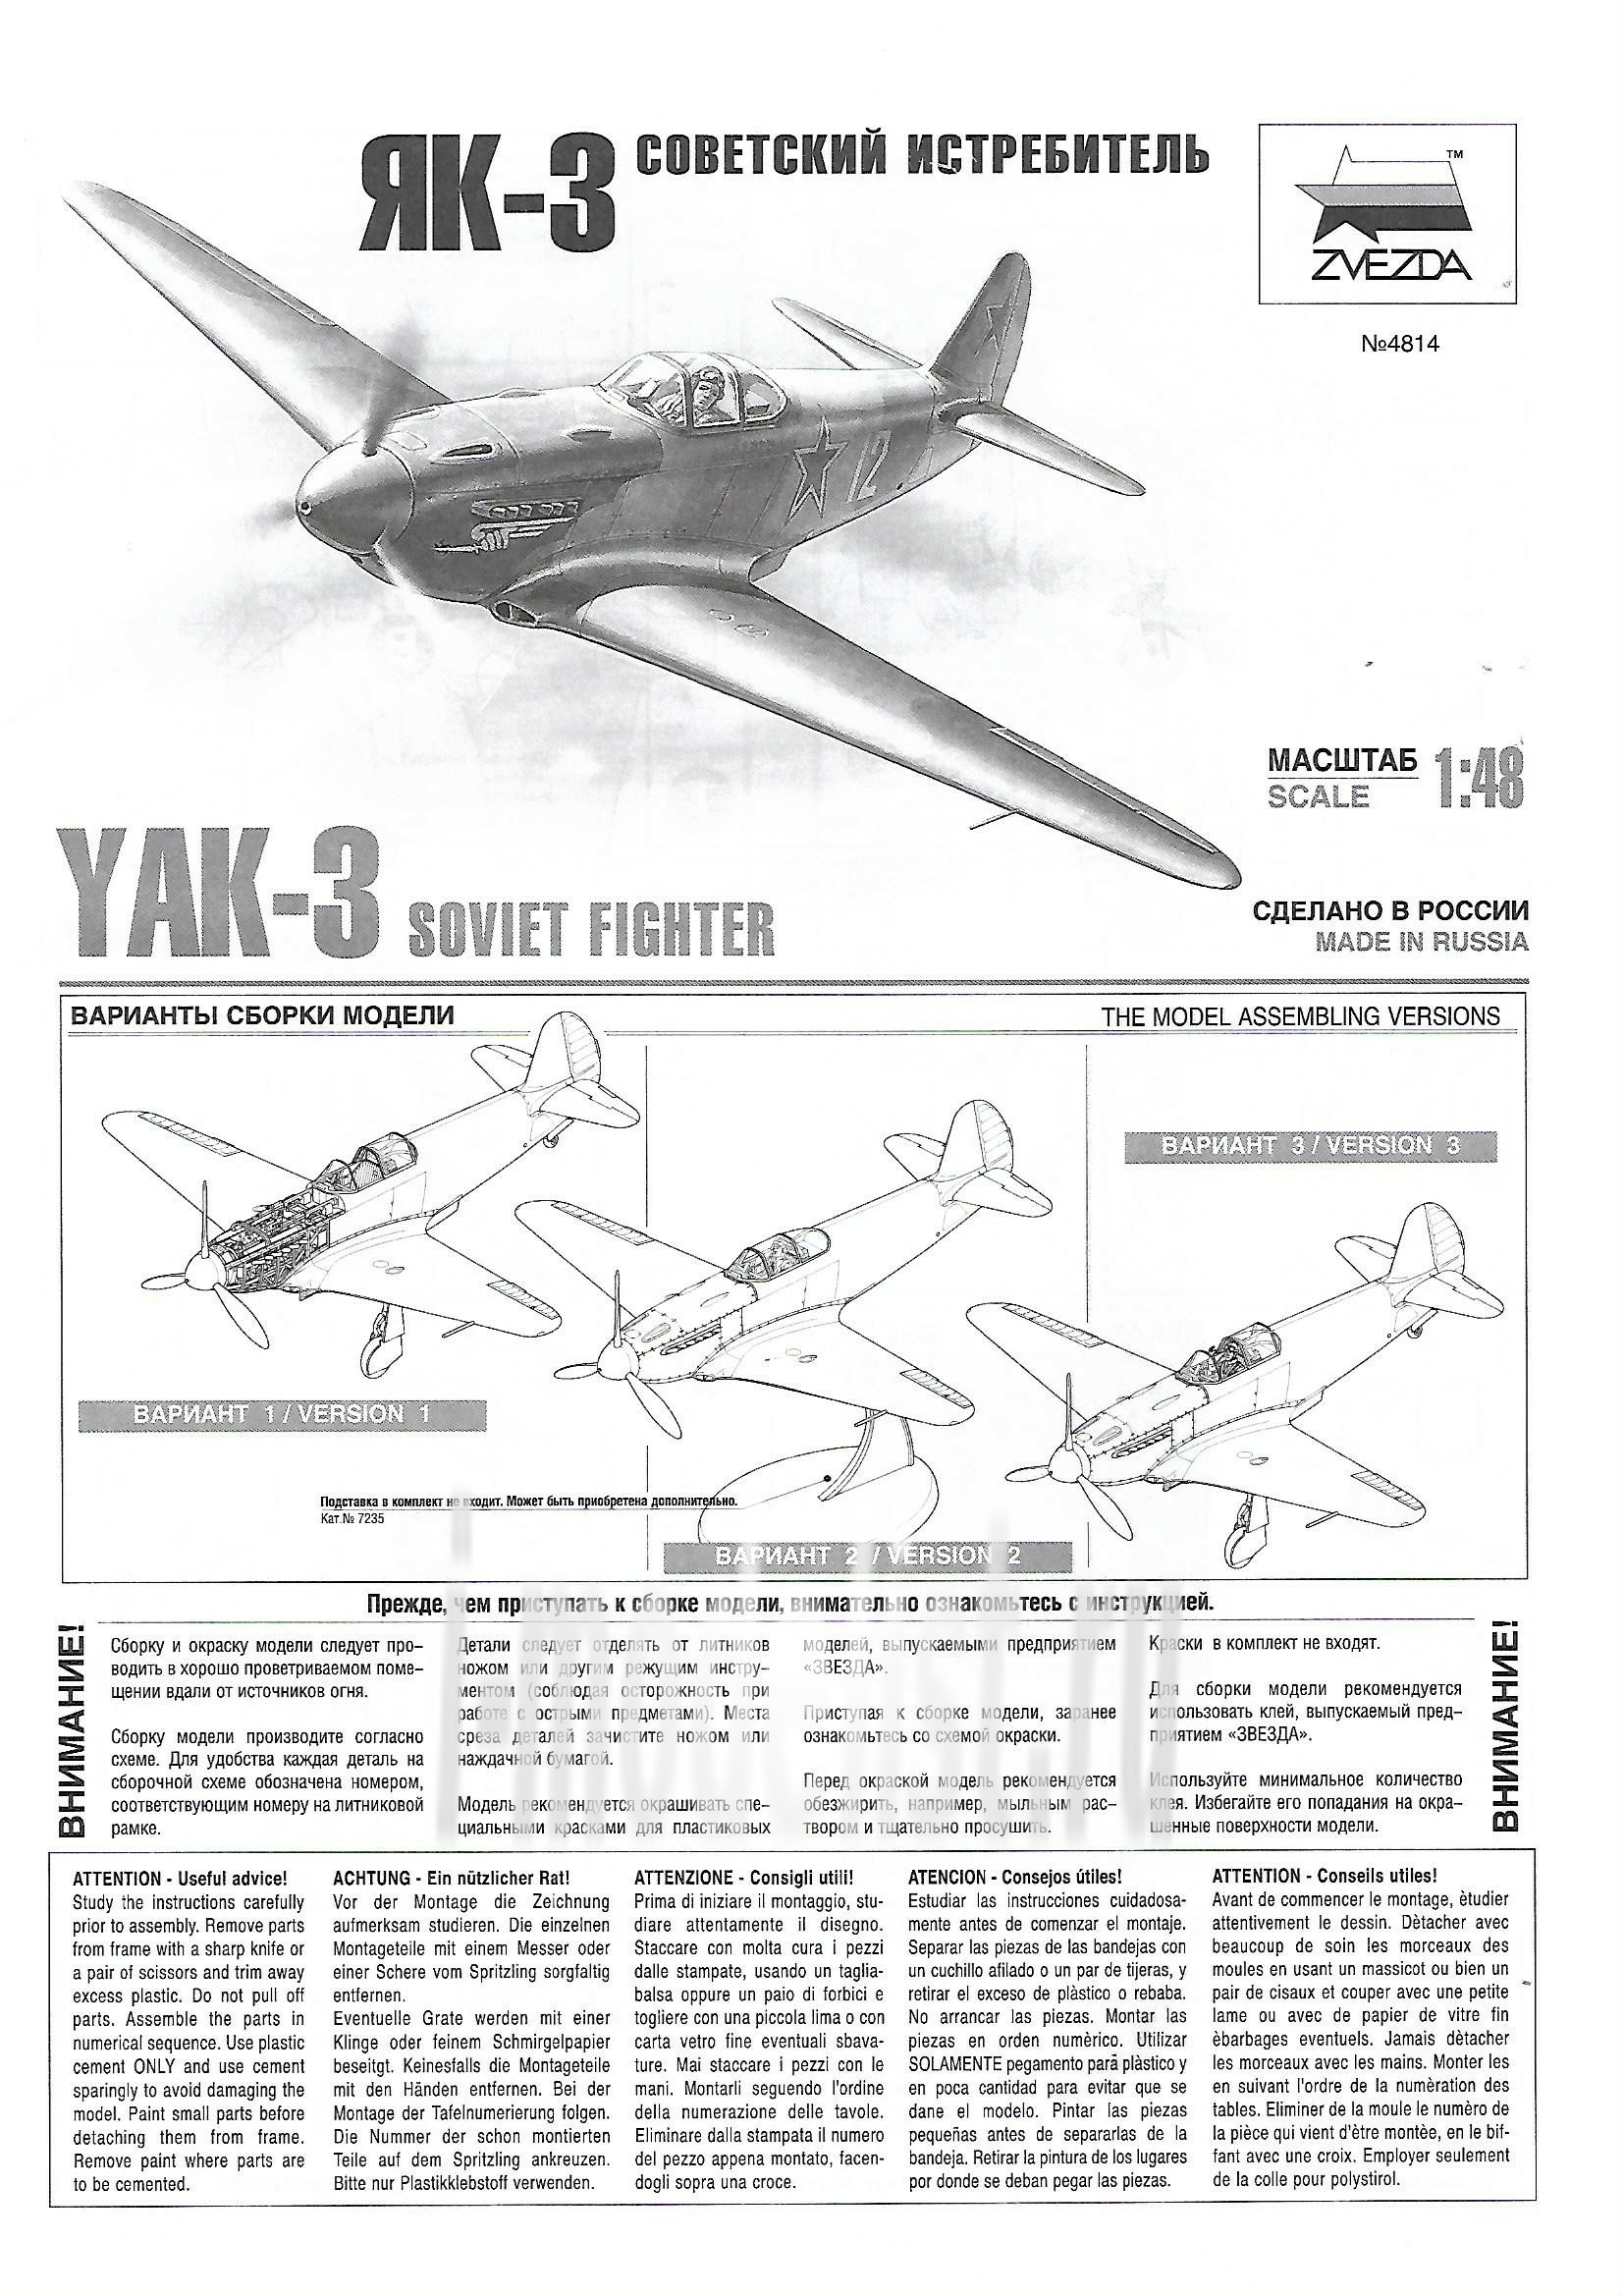 4814 Zvezda 1/48 Soviet Yak-3 fighter